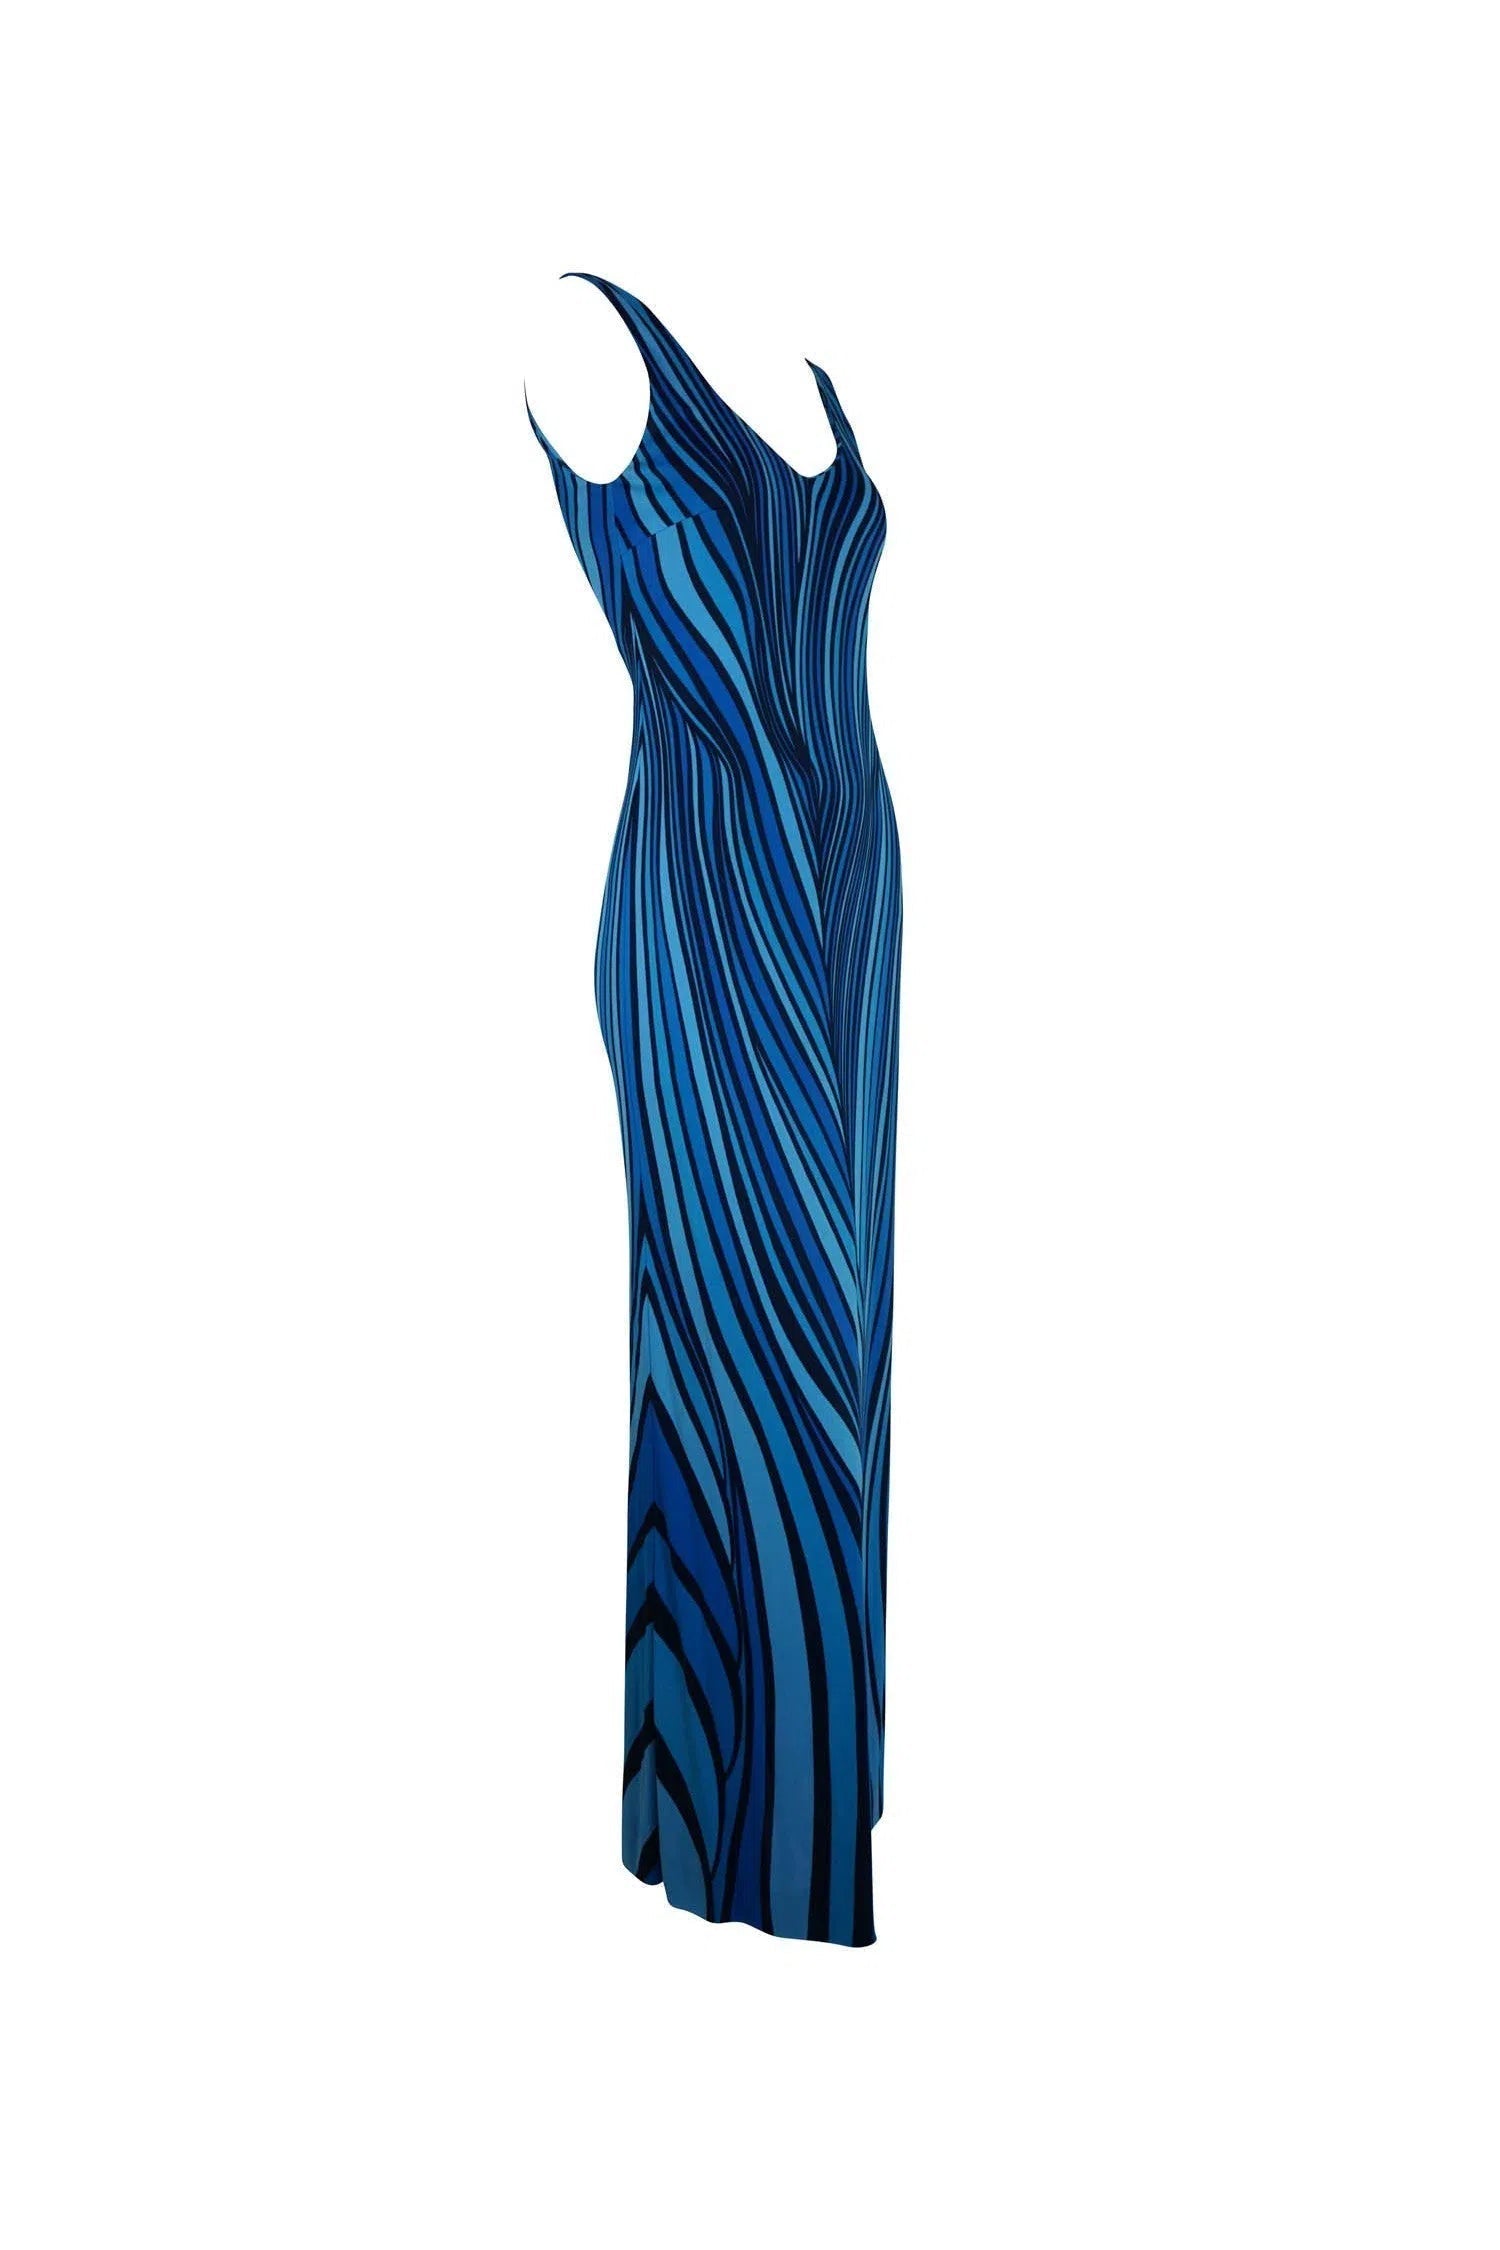 Roberta di Camerino 1970s Blue Swirl Dress - Foxy Couture Carmel